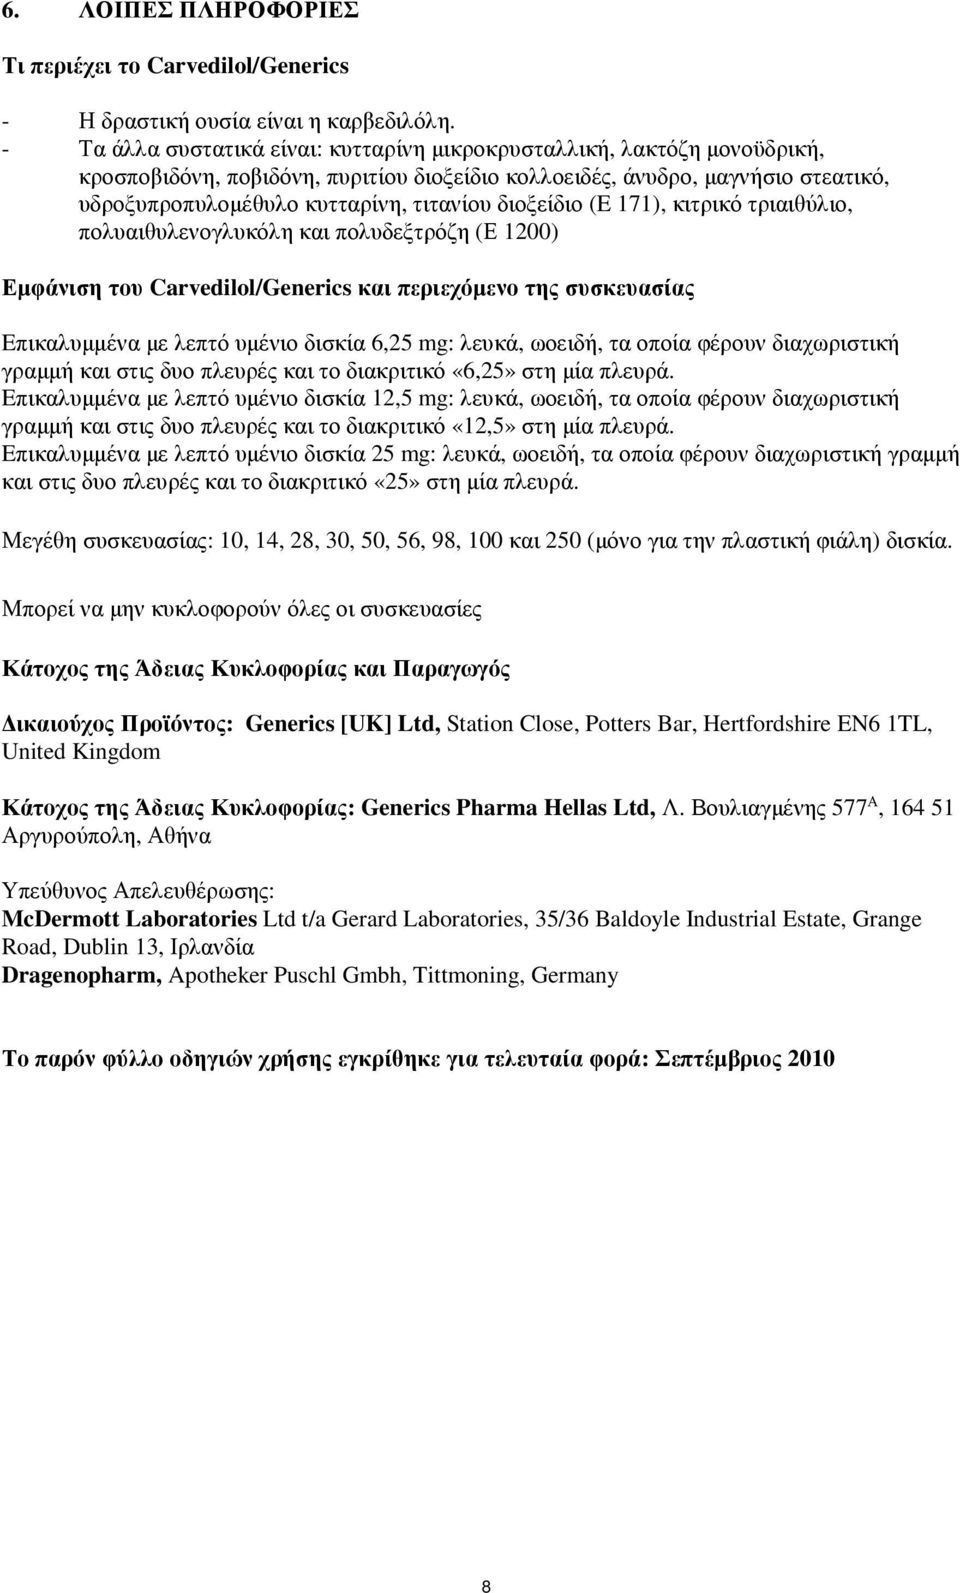 διοξείδιο (E 171), κιτρικό τριαιθύλιο, πολυαιθυλενογλυκόλη και πολυδεξτρόζη (Ε 1200) Εµφάνιση του Carvedilol/Generics και περιεχόµενο της συσκευασίας Eπικαλυµµένα µε λεπτό υµένιο δισκία 6,25 mg: